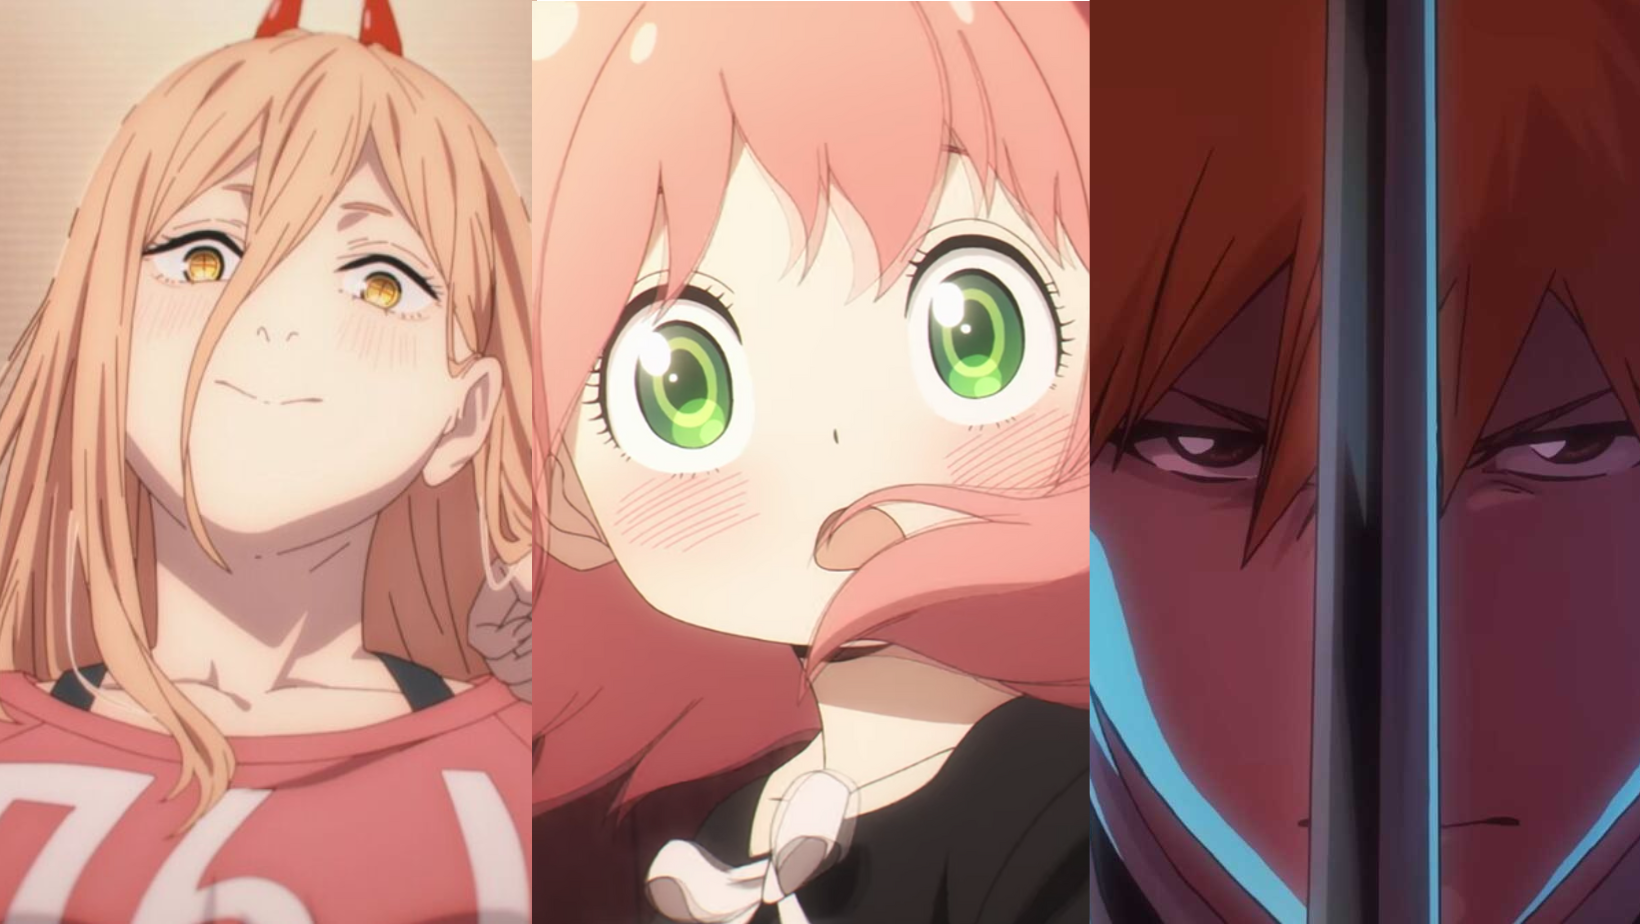 8 melhores reis demônios em anime - AnimeBox